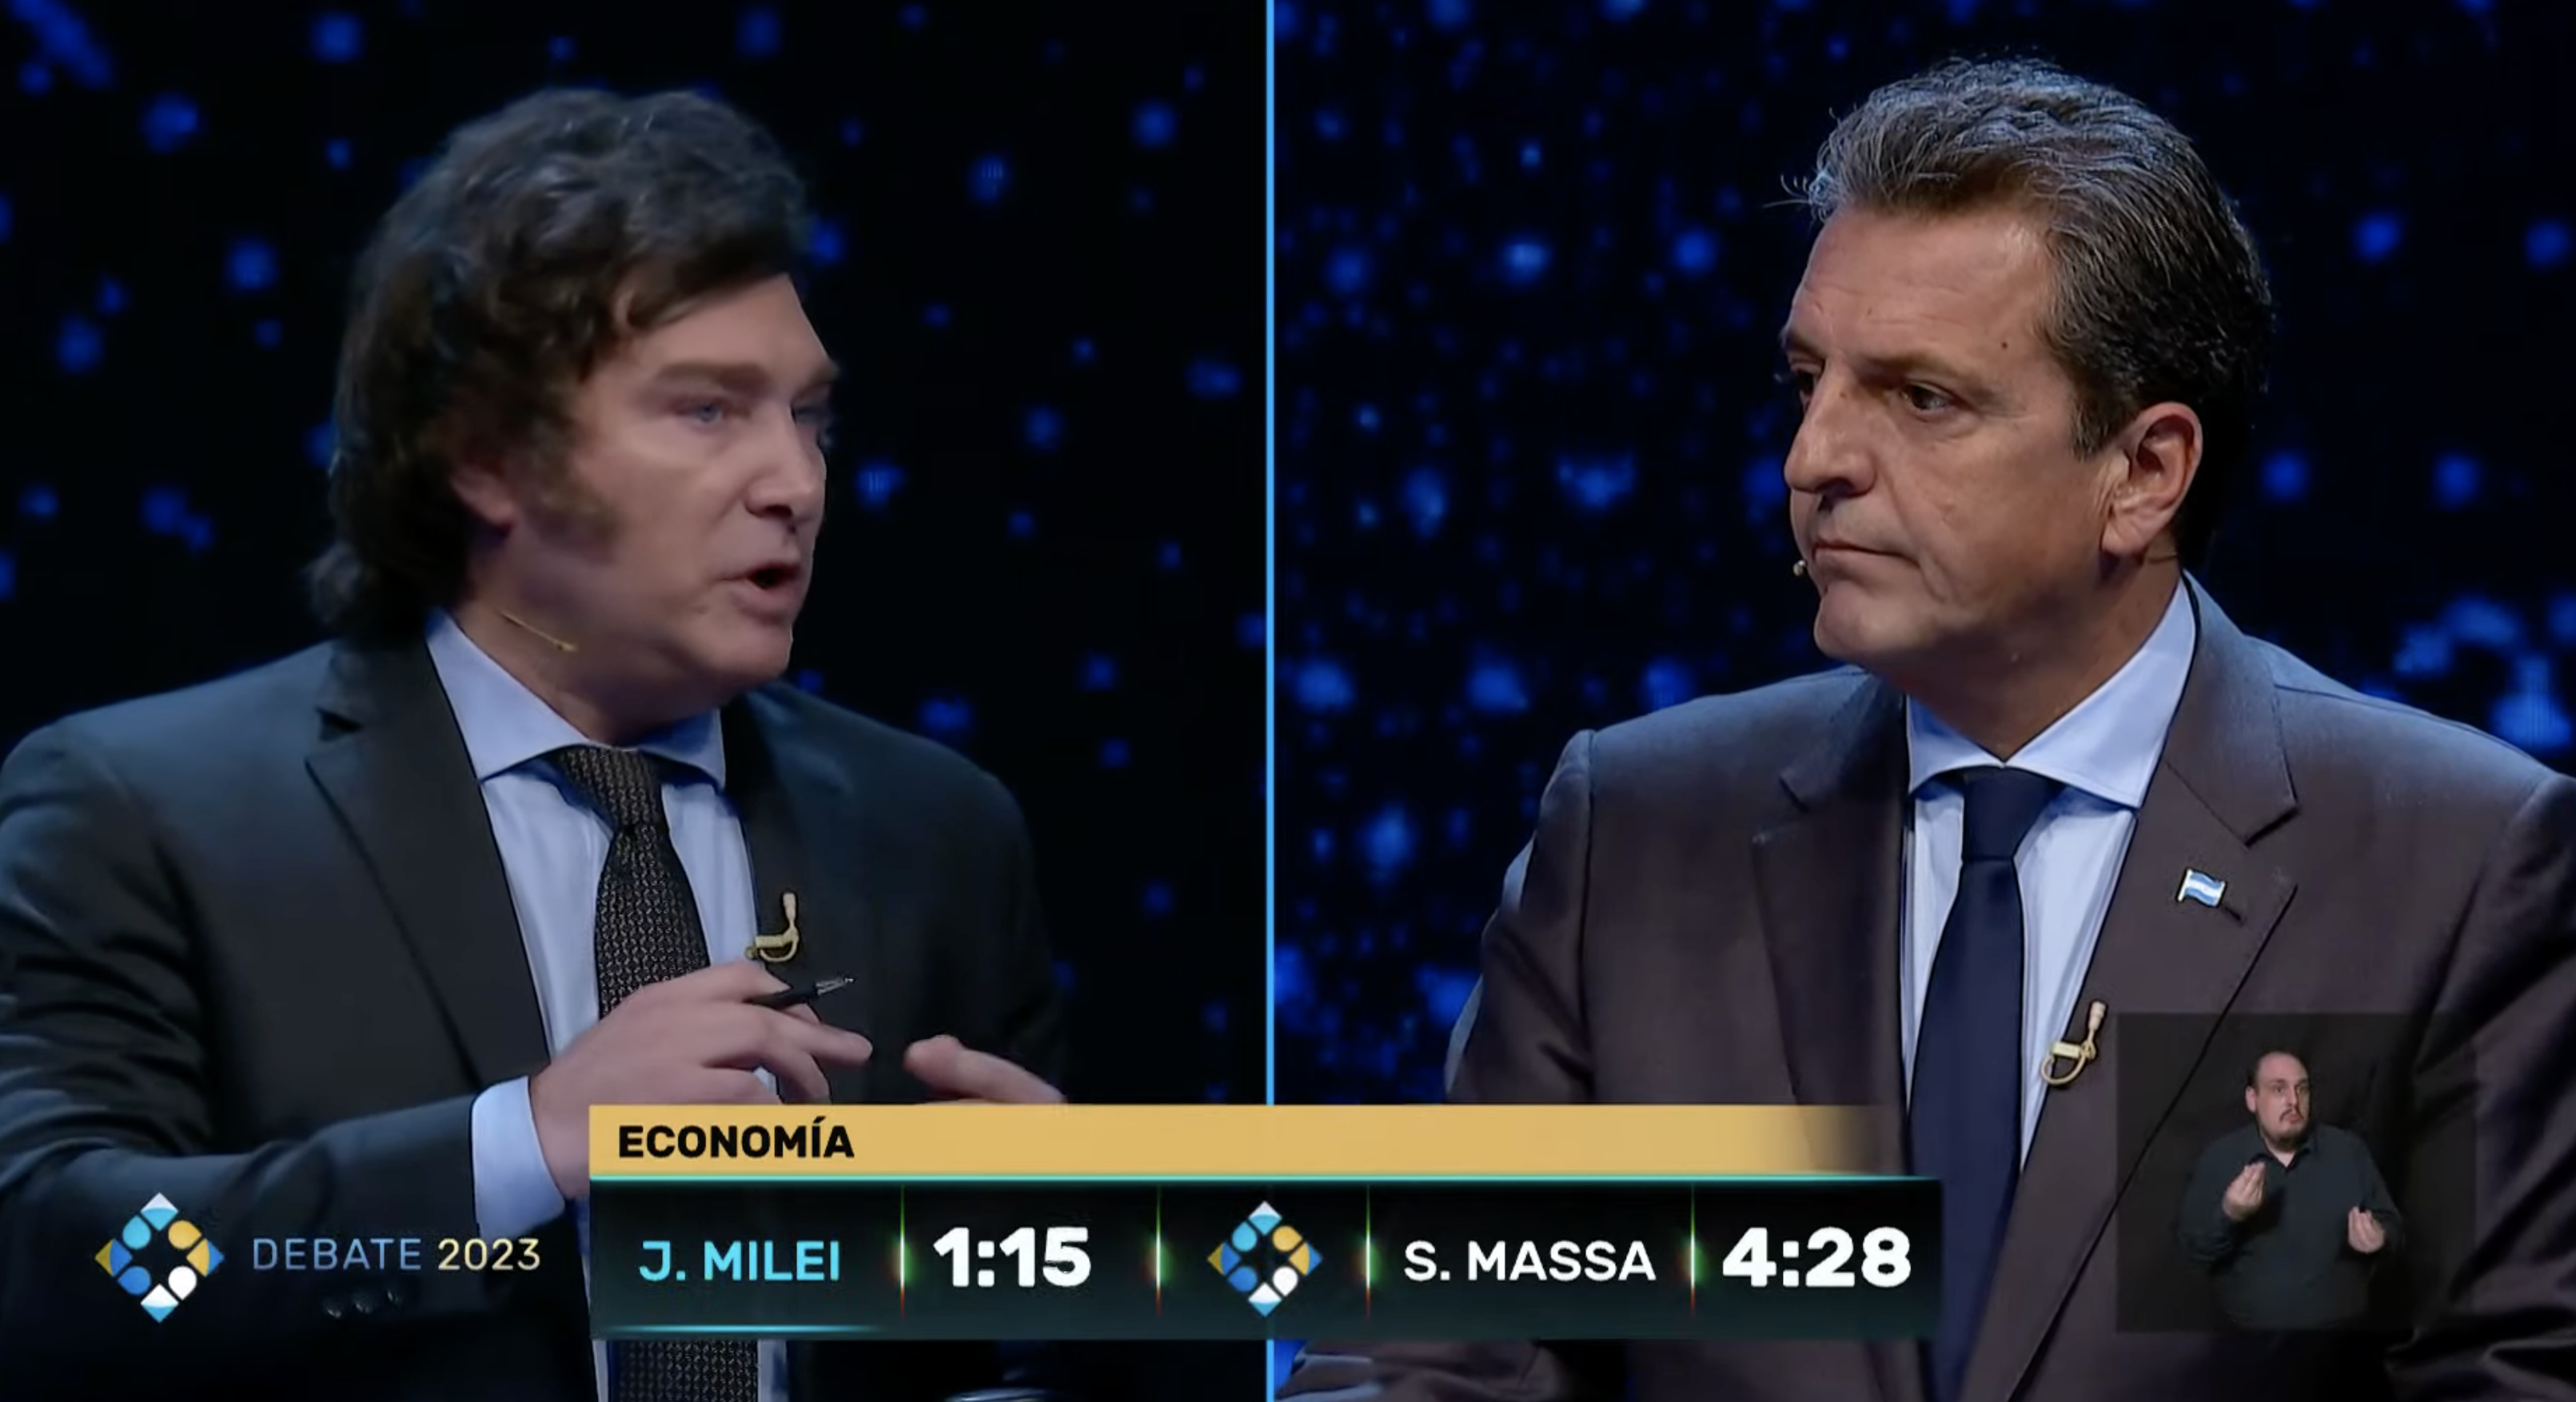 Debate por el balotaje 2023: todos los chequeos a lo que dijeron los candidatos Sergio Massa y Javier Milei en el tercer debate